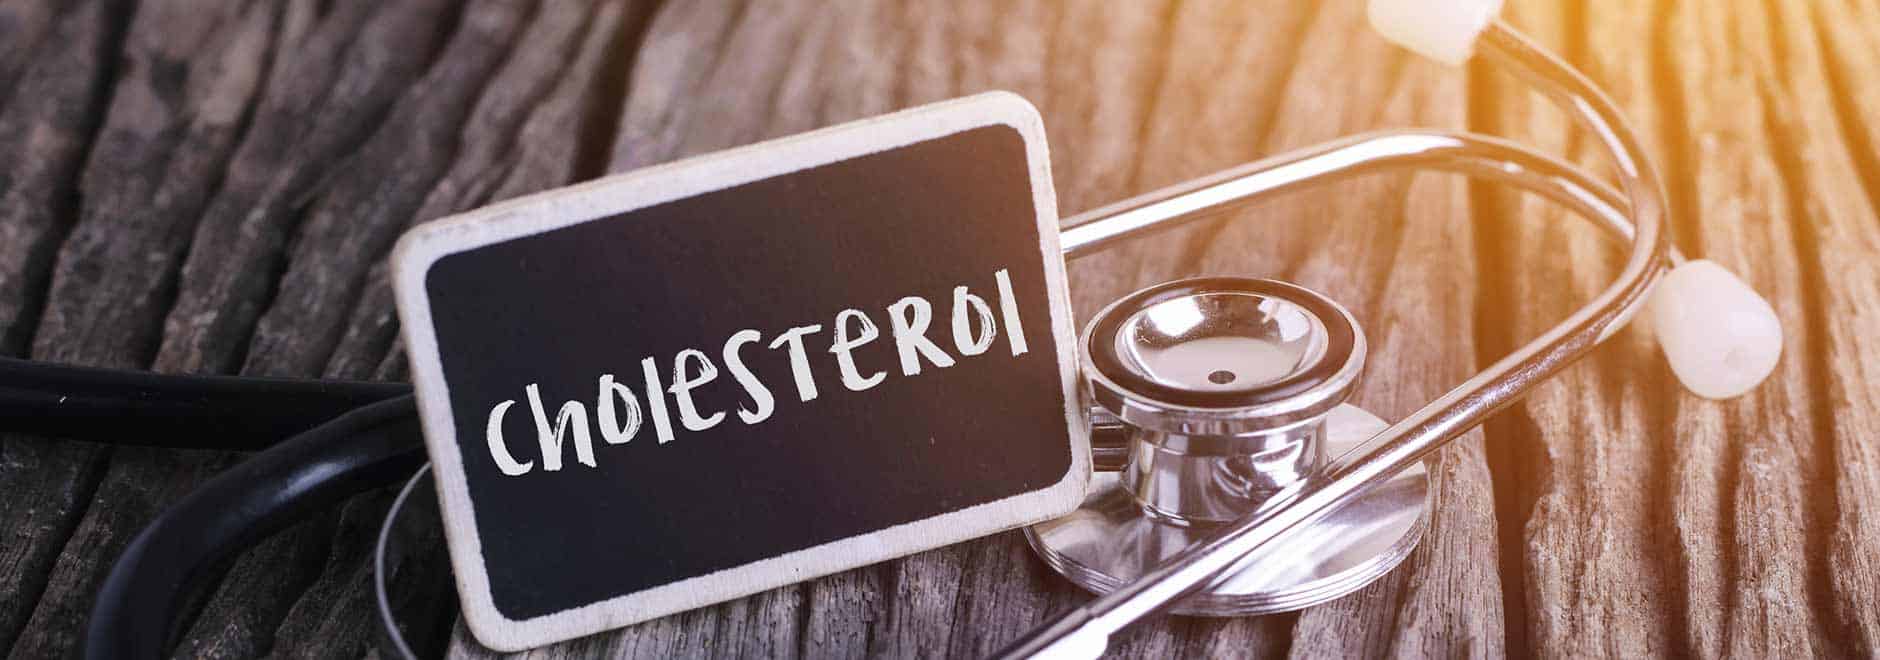 Kadar kolesterol jahat di masa muda dapat prediksi risiko penyakit jantung di masa mendatang